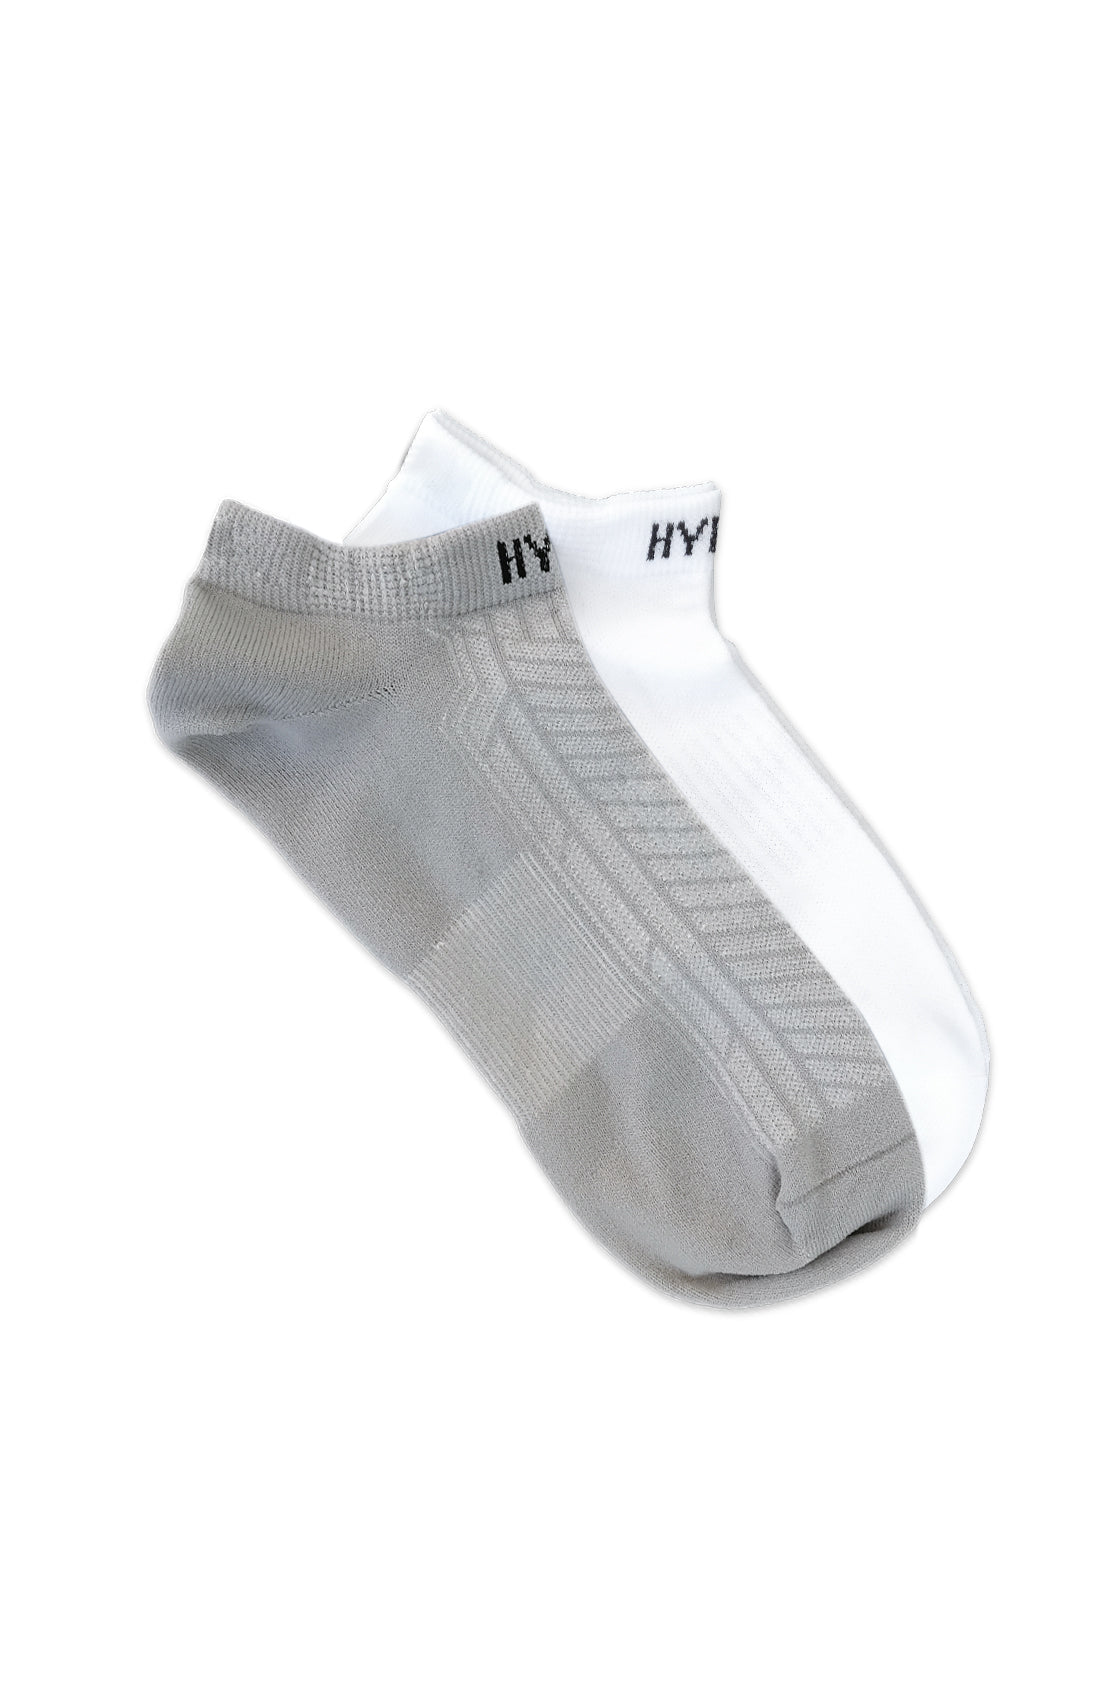 Men's Airlight Socks (2 Pack)